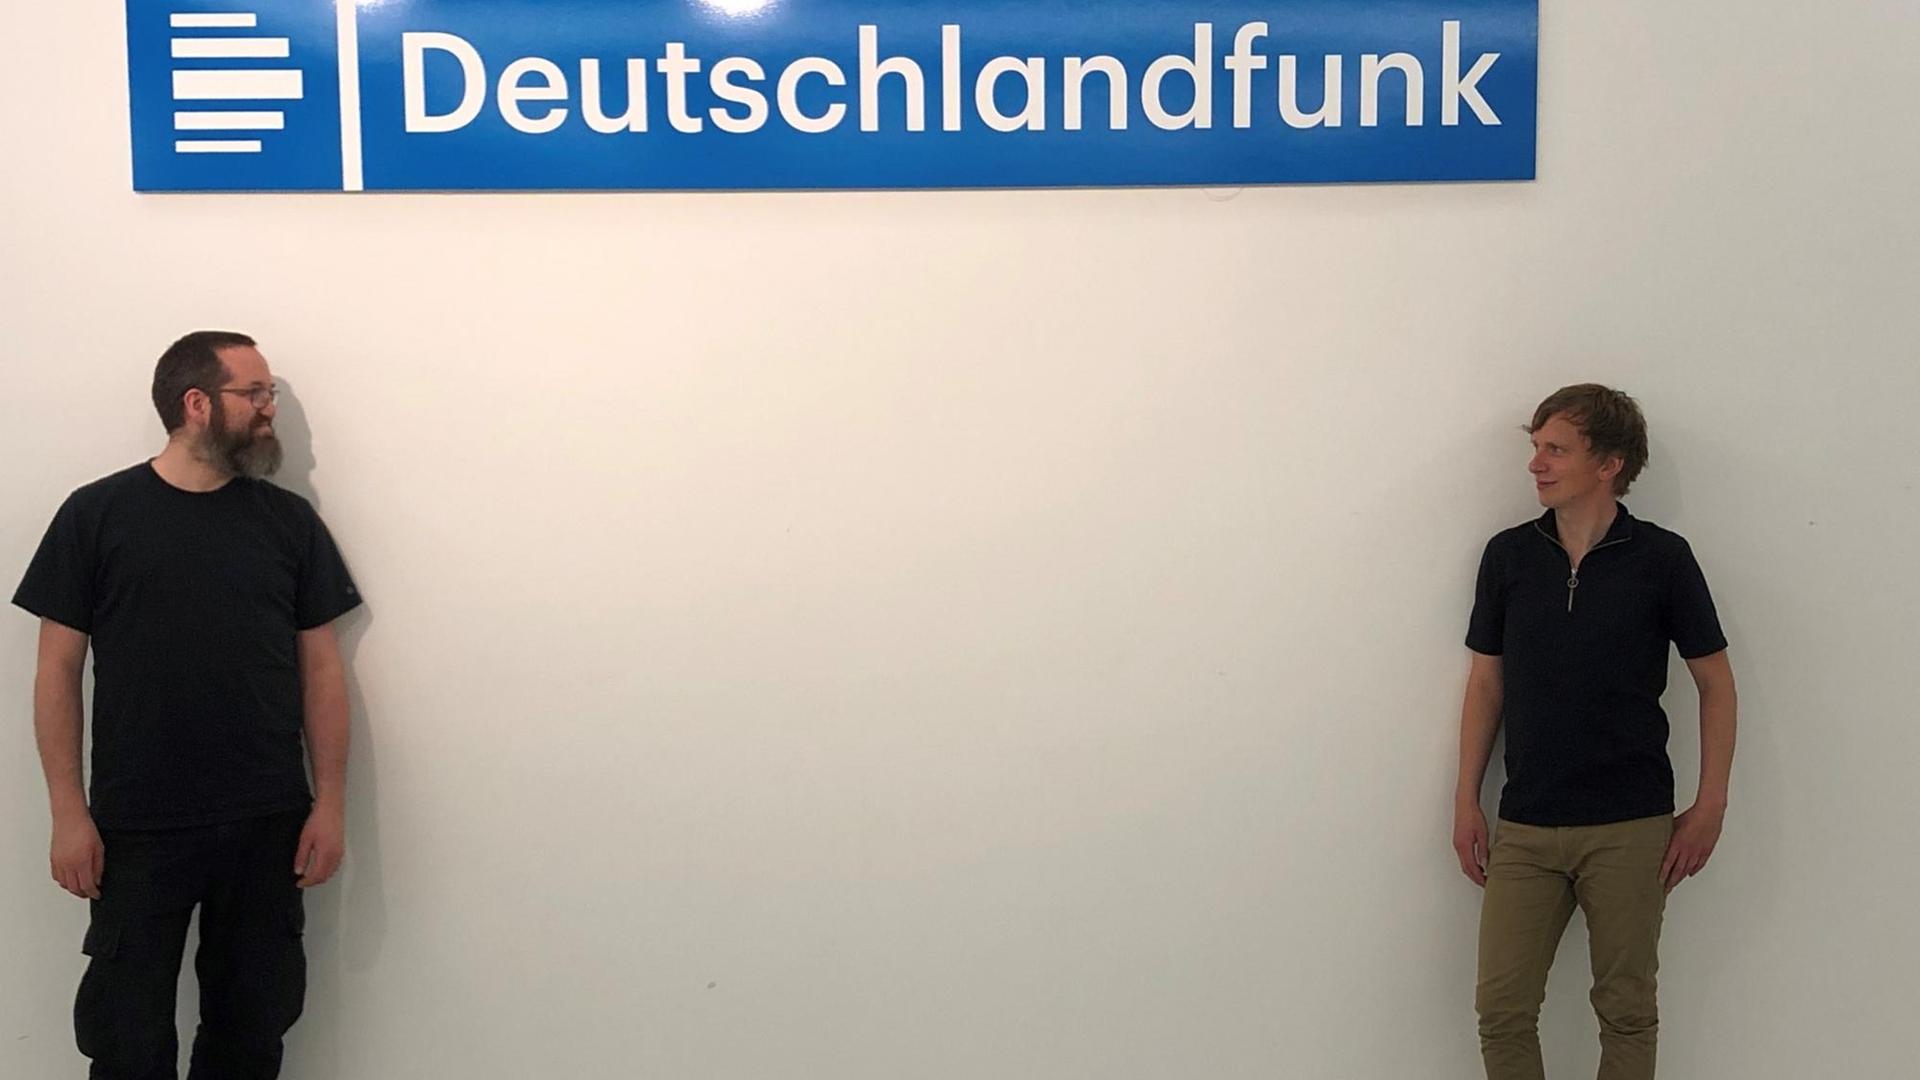 Unter dem Deutschlandfunk Logo stehen sich zwei Männer auf Abstand gegenüber und schauen sich an.